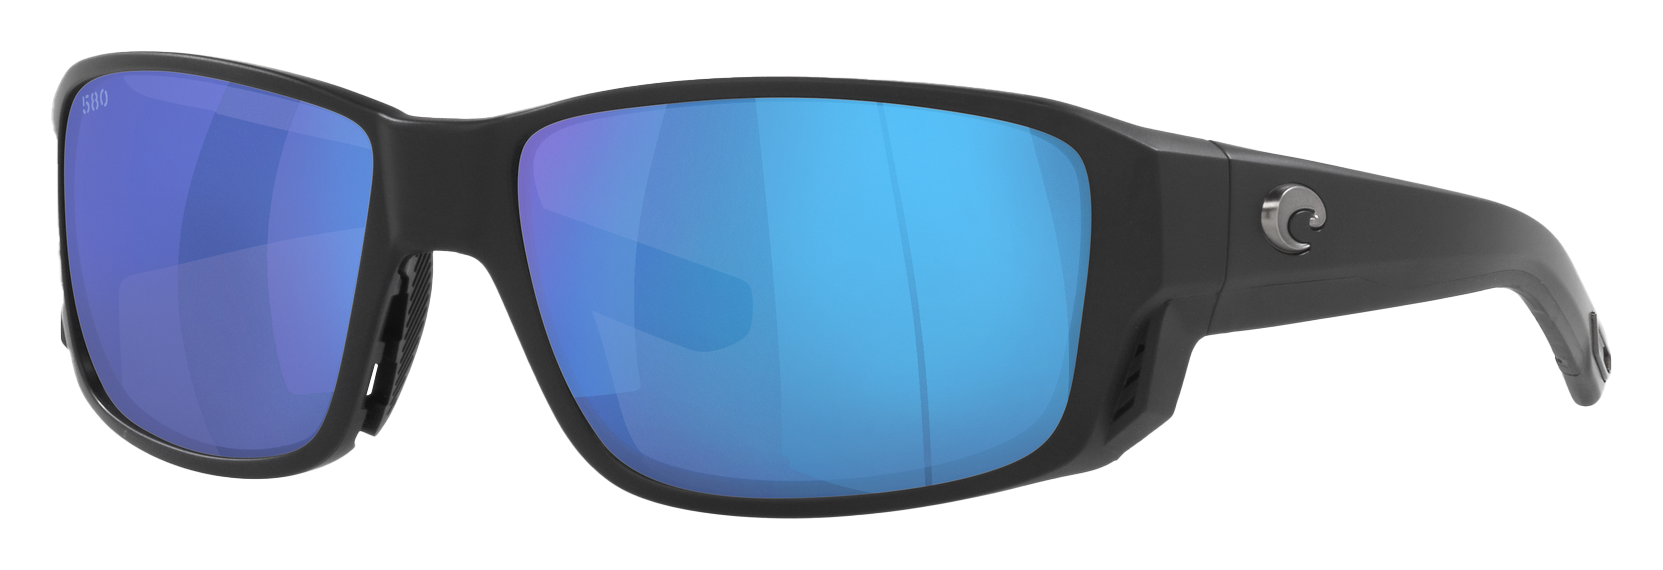 Costa Del Mar Tuna Alley PRO 580G Glass Polarized Sunglasses - Matte Black/Blue Mirror - Large